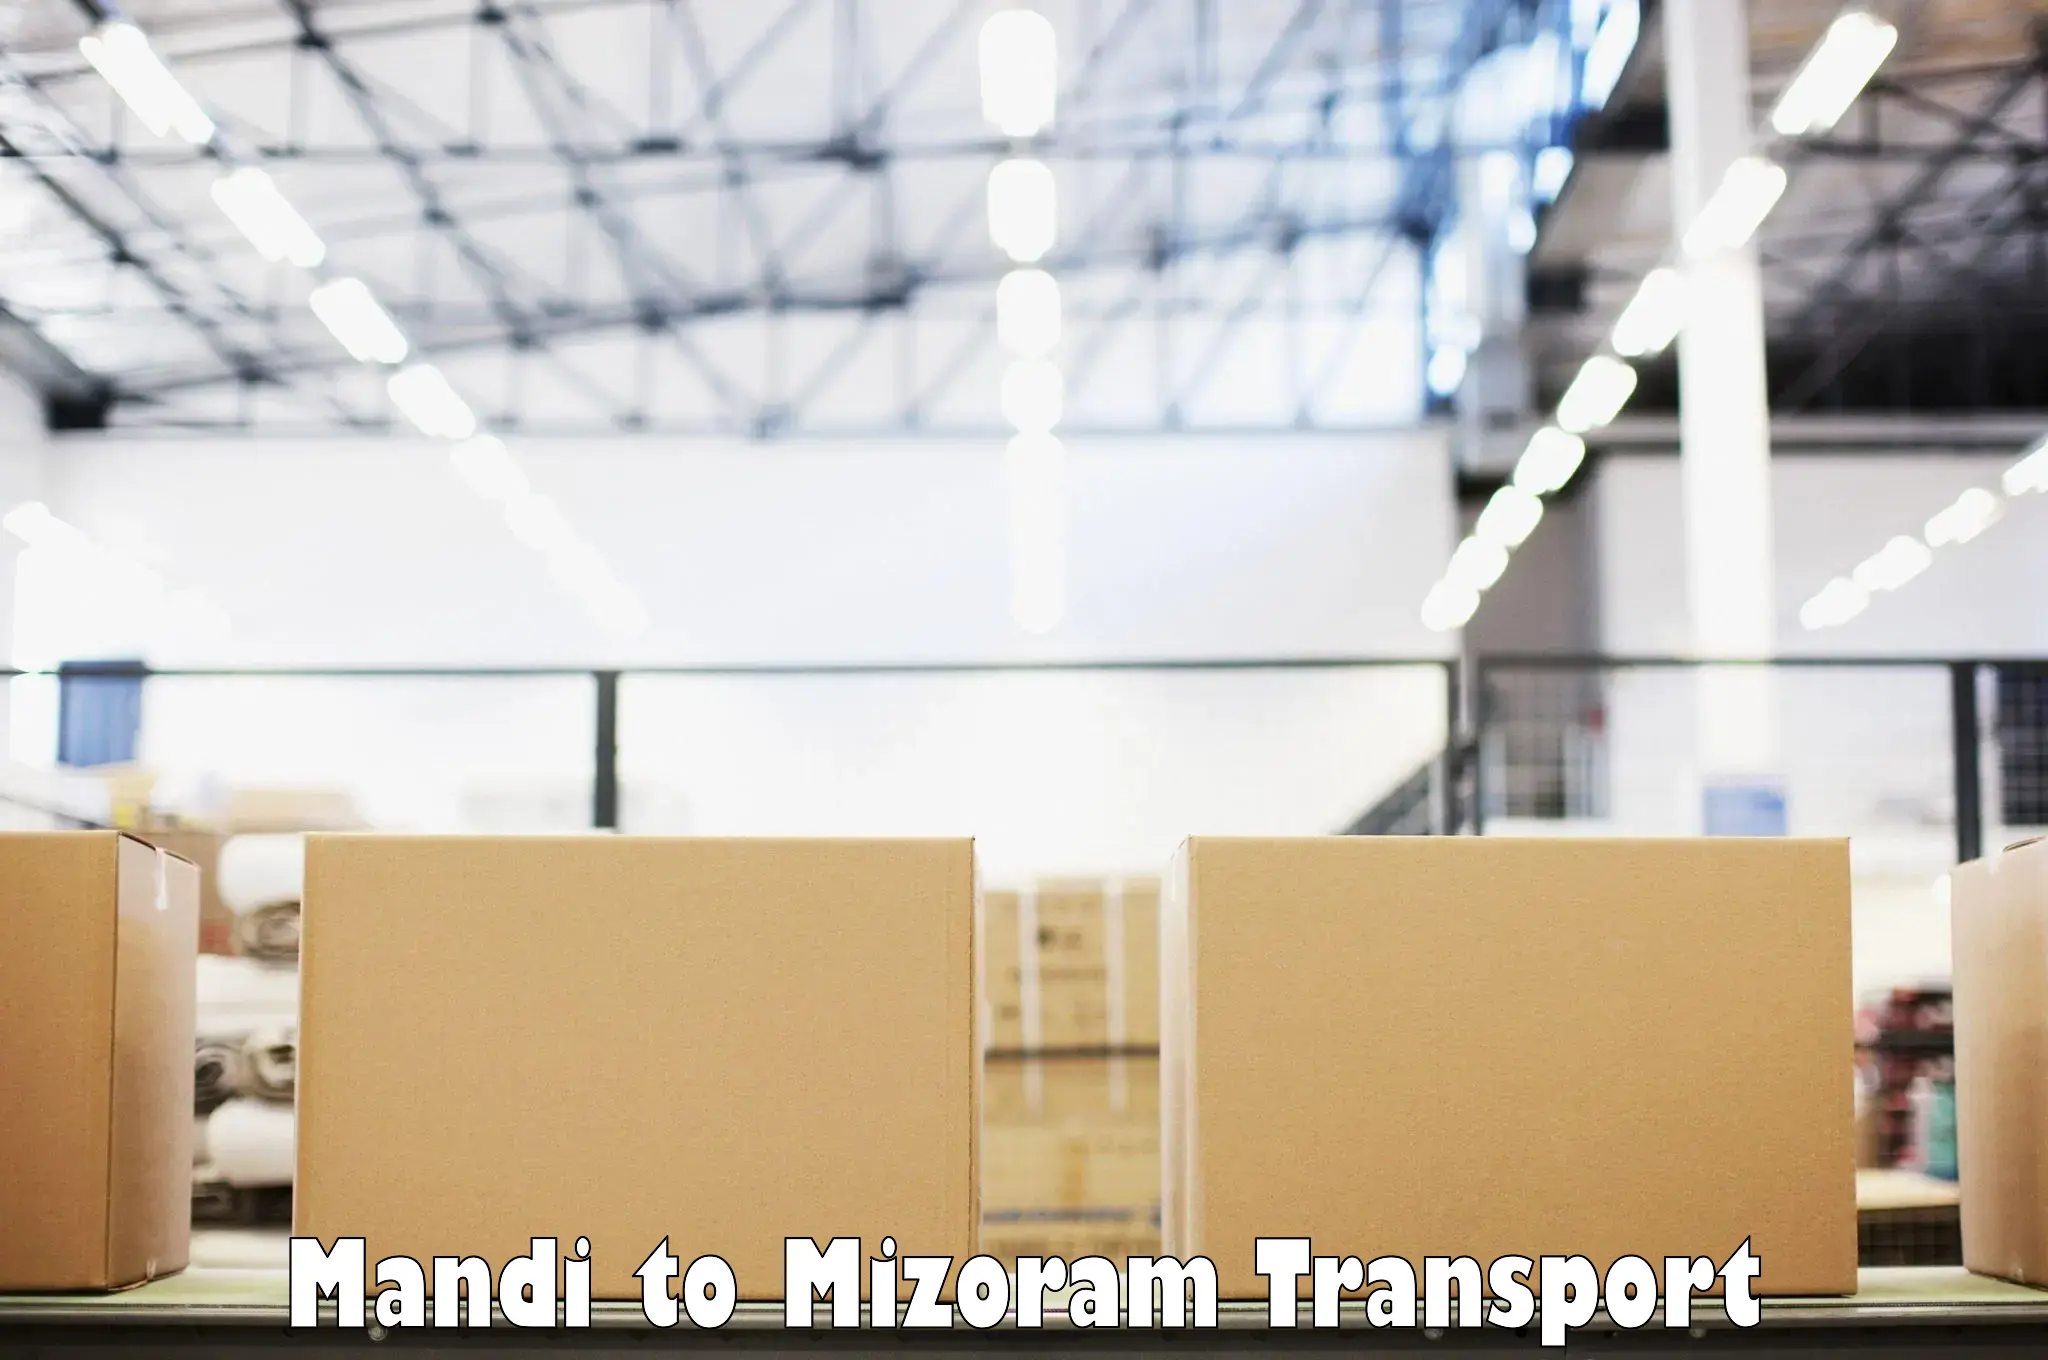 Container transport service Mandi to Mizoram